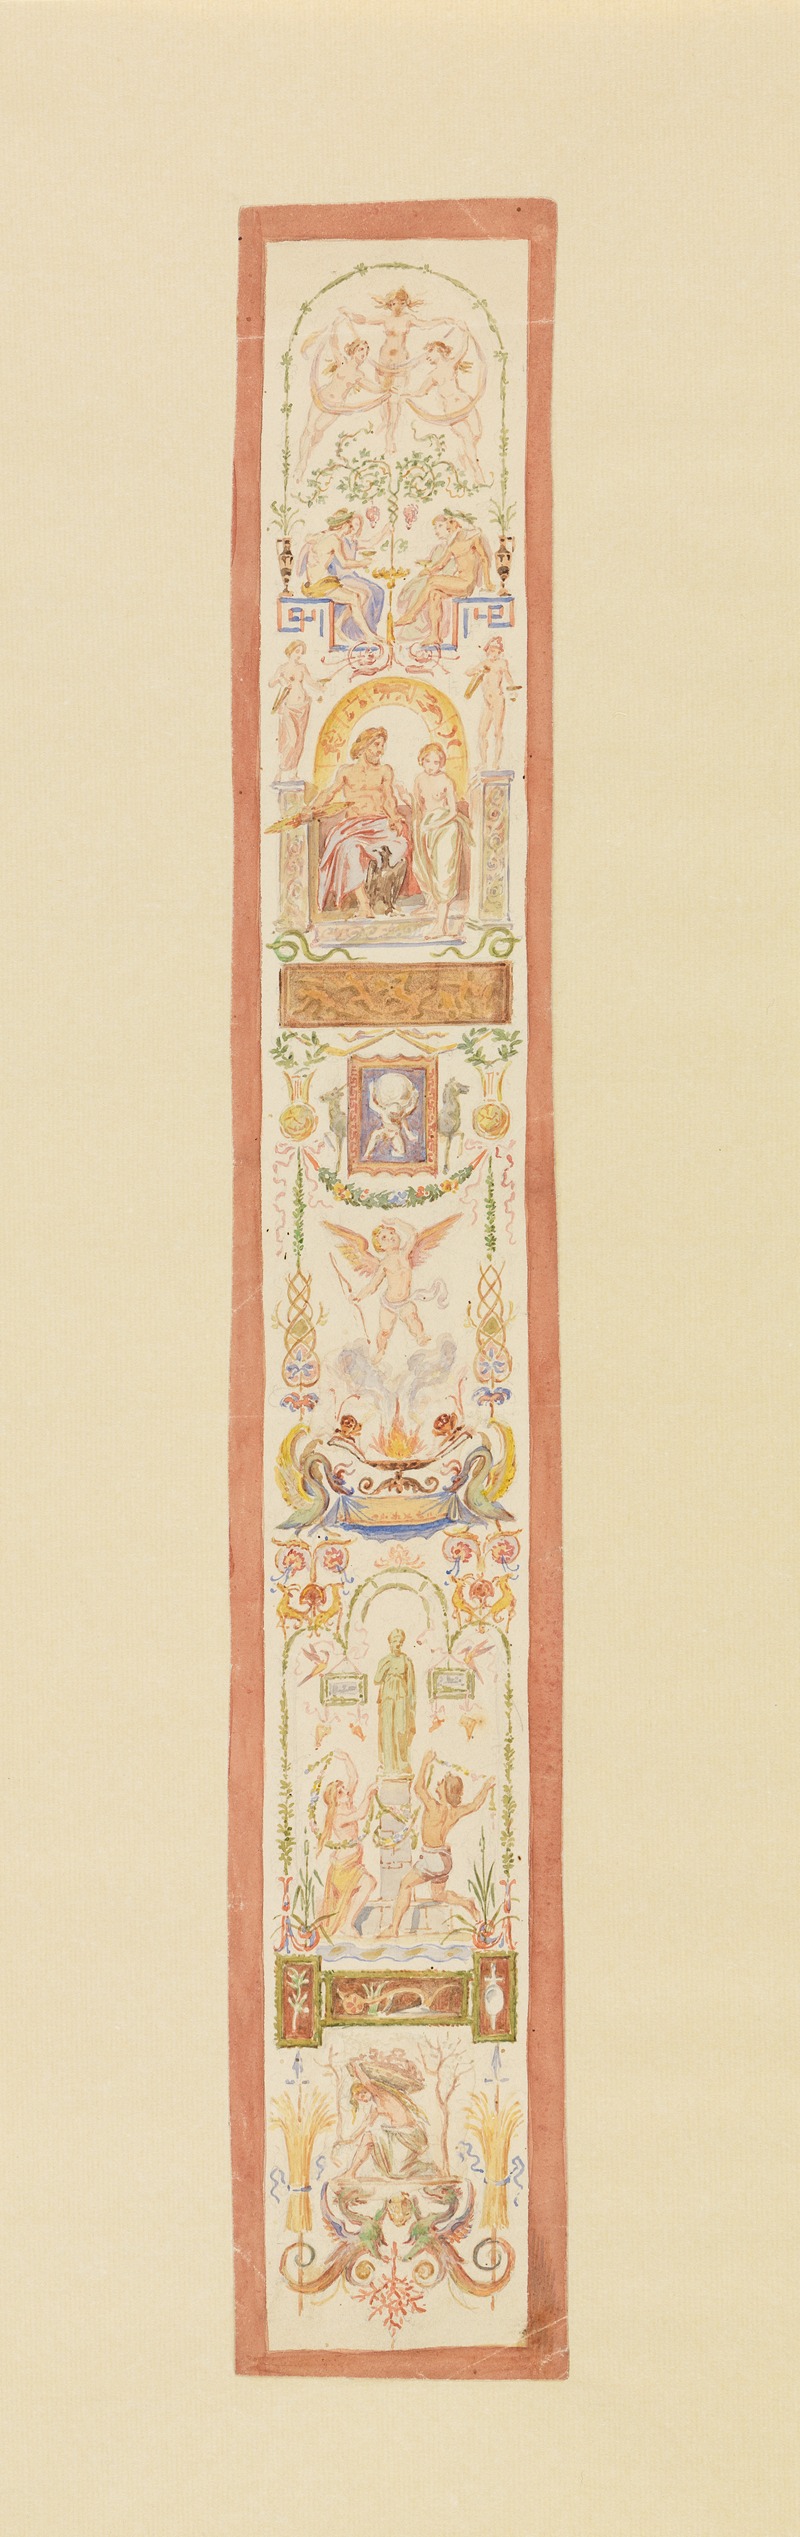 Moritz von Schwind - Entwurf mit vegetabilischen Ornamenten und figürlichen Szenen für eine Wanddekoration